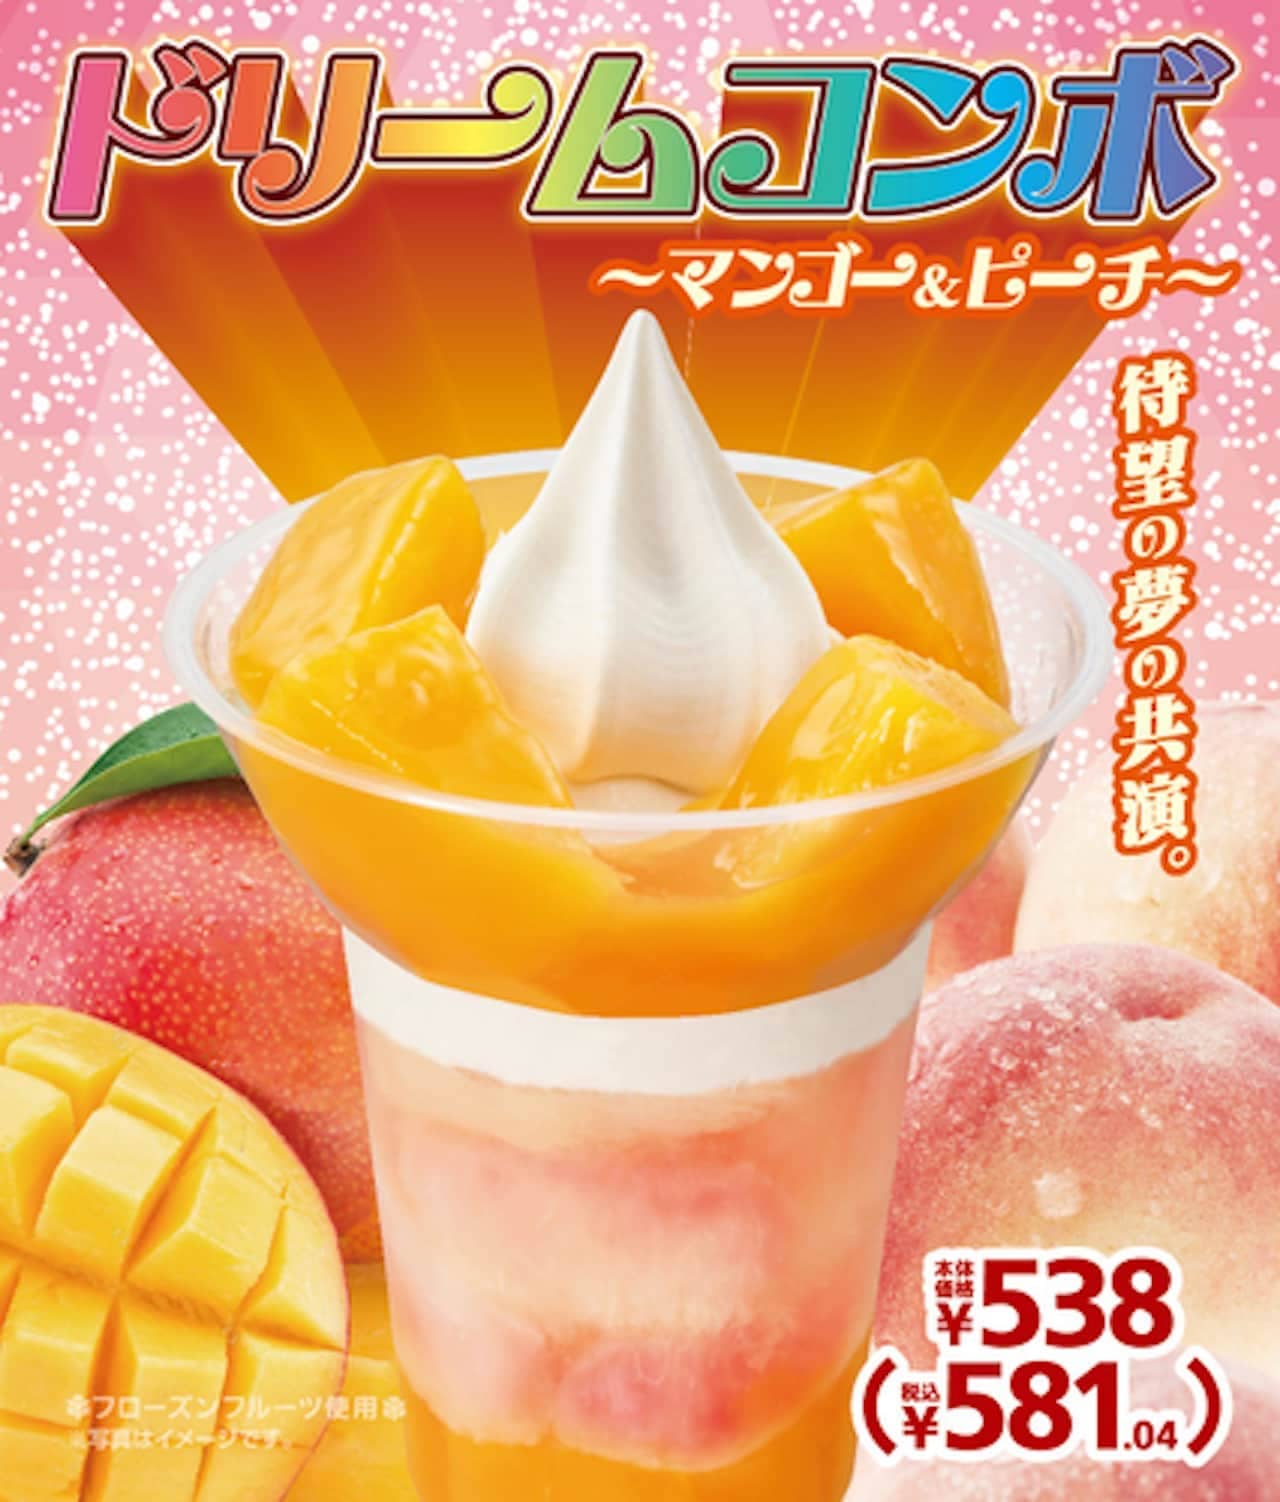 Ministop "Dream Combo - Mango & Peach